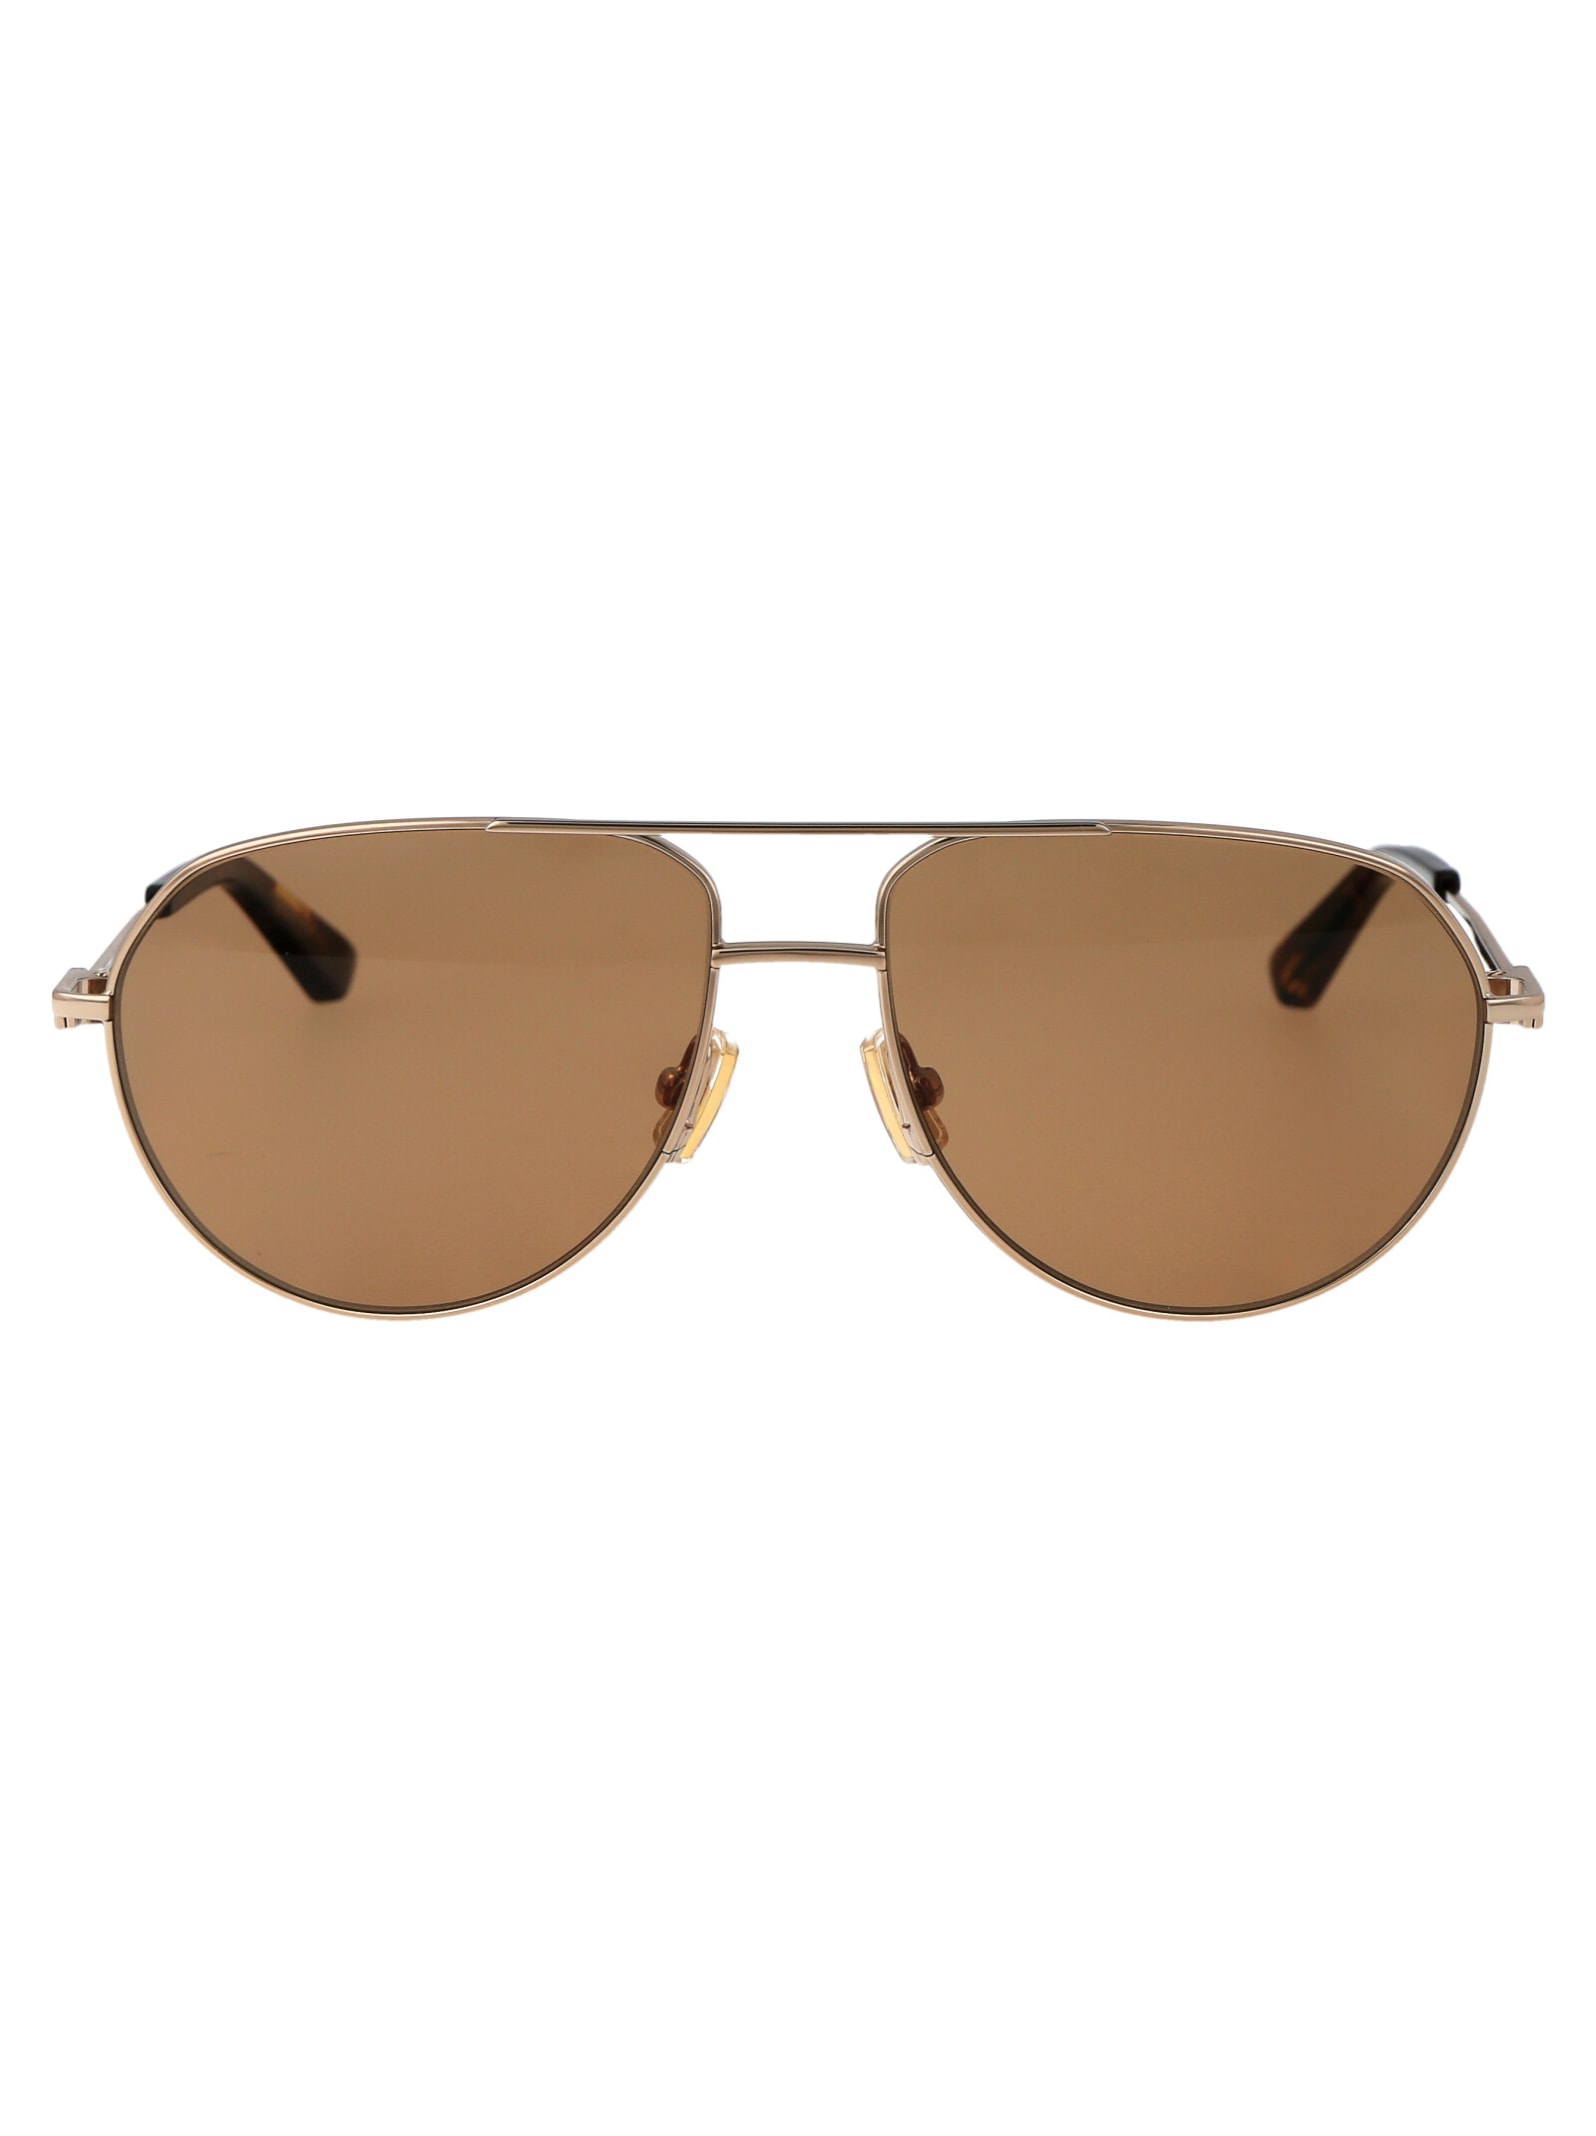 Bv1302s Sunglasses